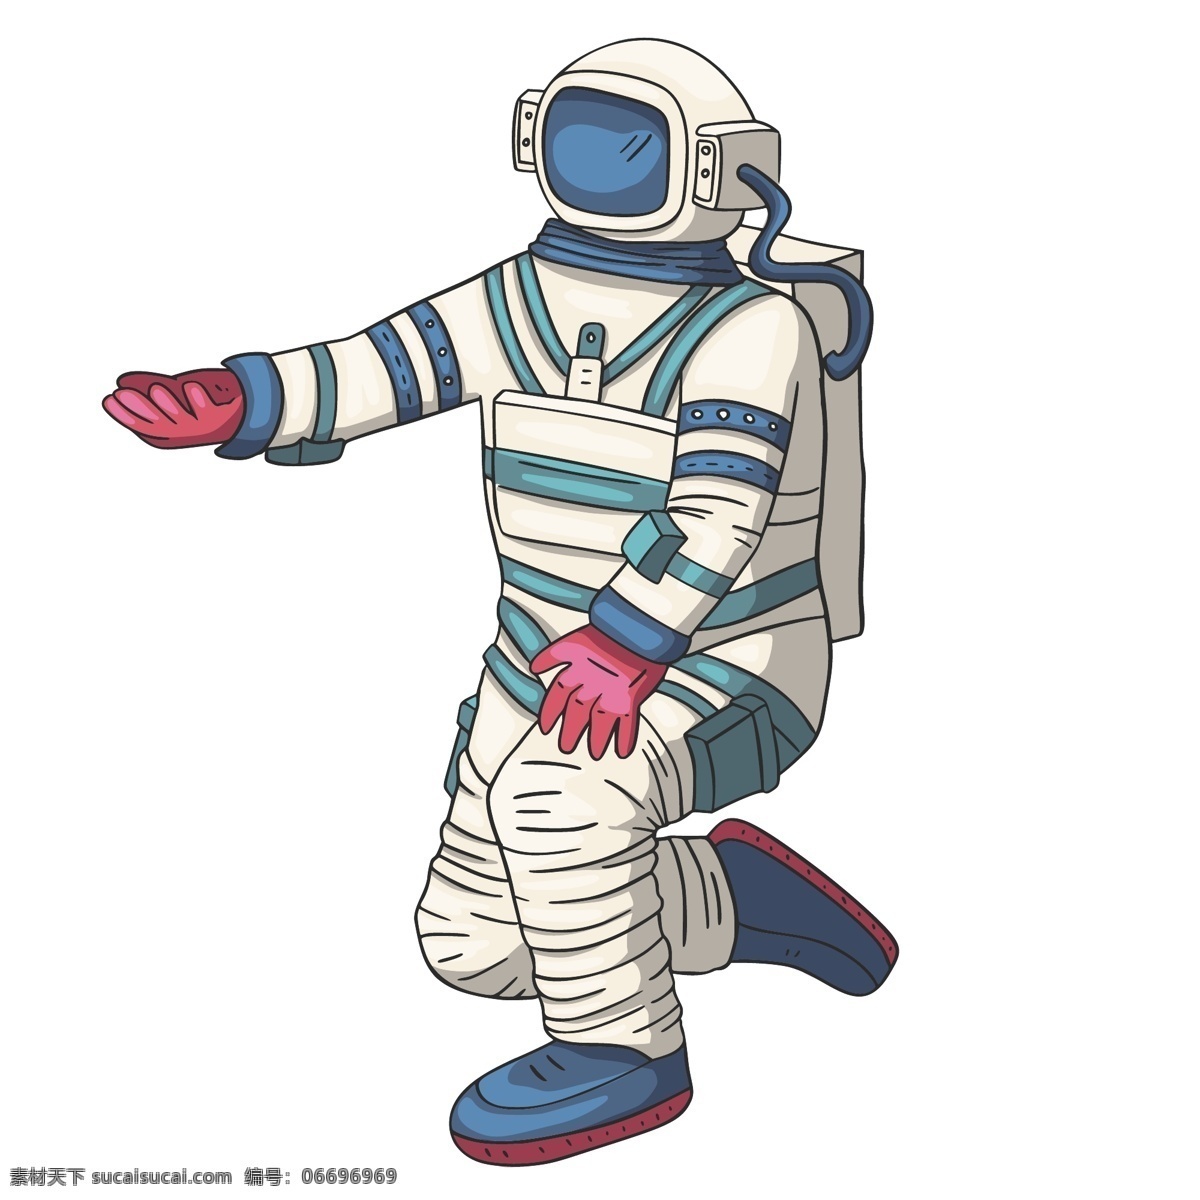 宇航员 卡通 插画 宇航员插画 卡通宇航员 太空主题插画 人物插画 航空航天插画 涂鸦插画 动漫动画